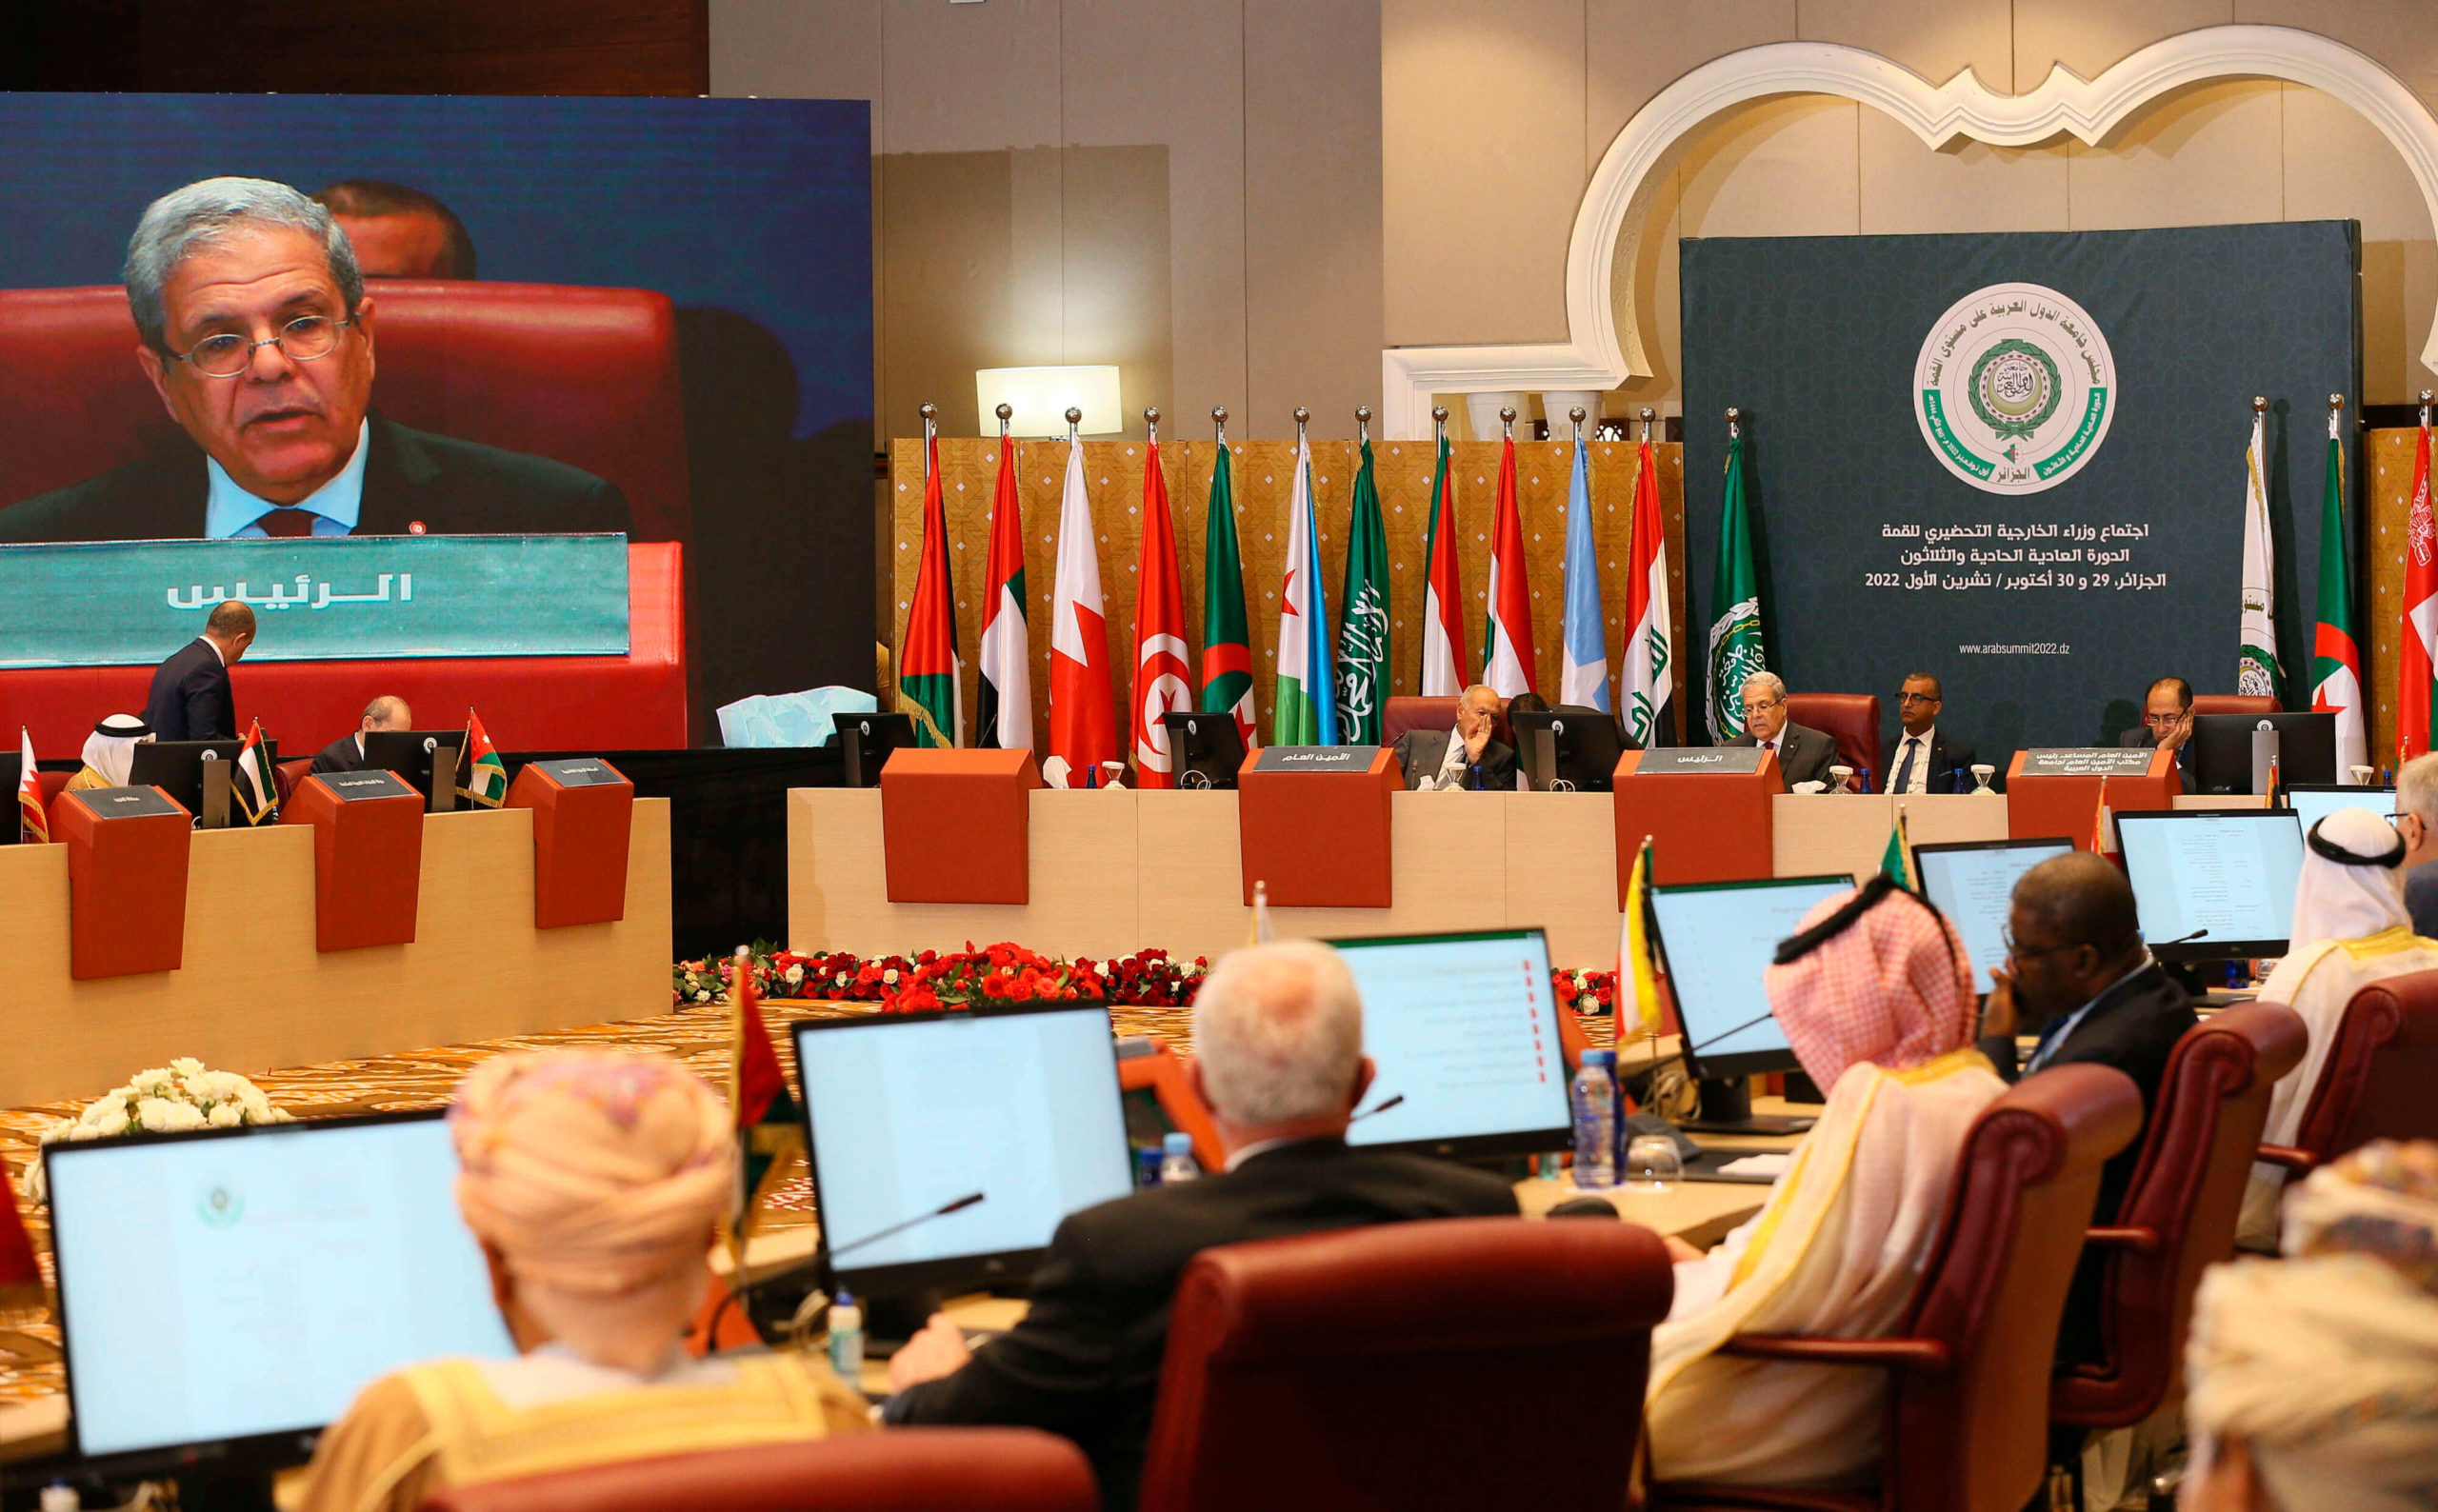 قصر المؤتمرات عبد اللطيف رحال بغربي المدنية الذي يحتضن اجتماعات القمة العربية